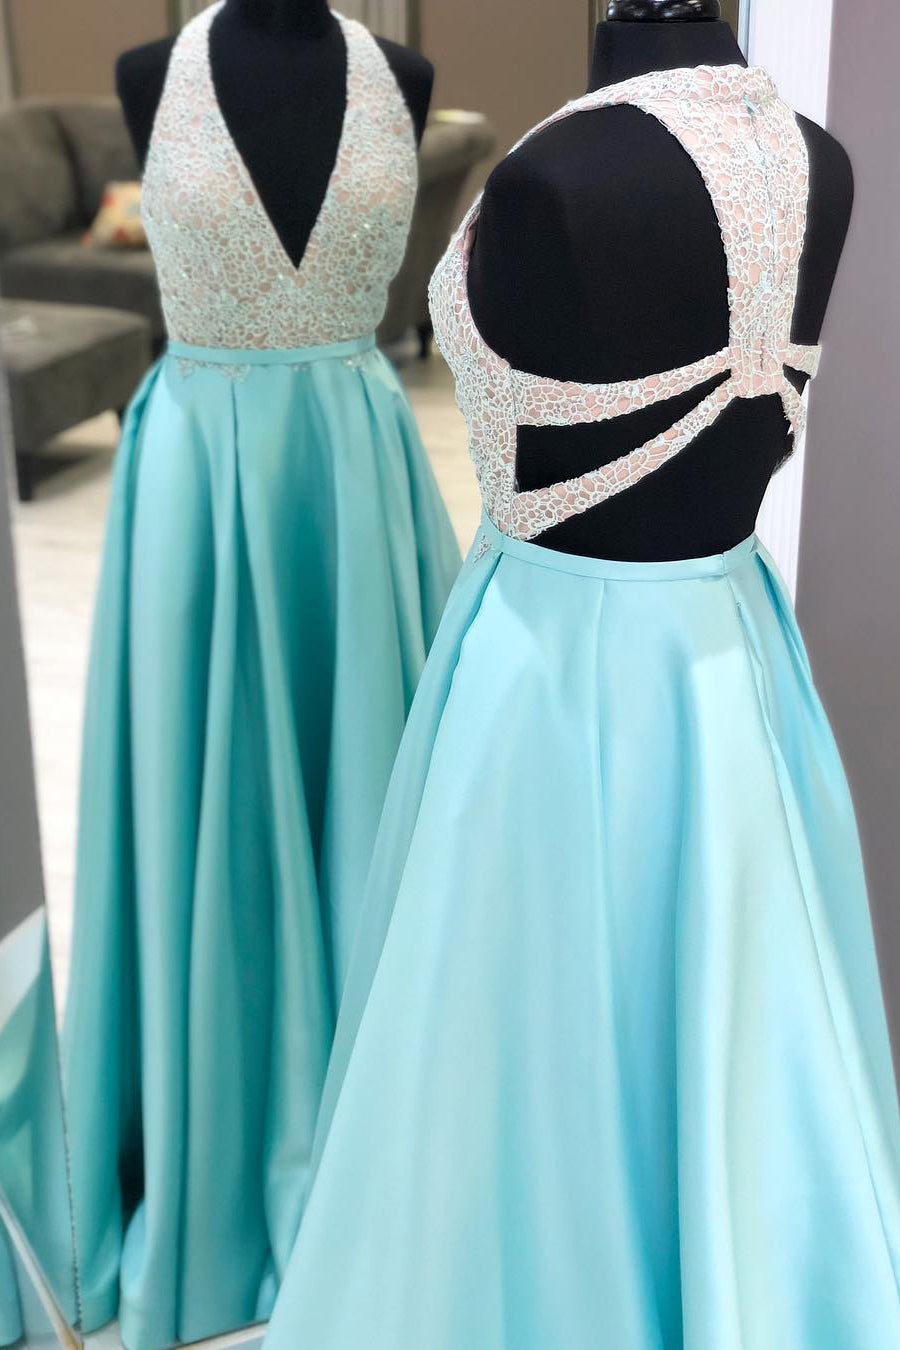 Plunging Neck Long Beading Ice Blue Prom Dress – FancyVestido